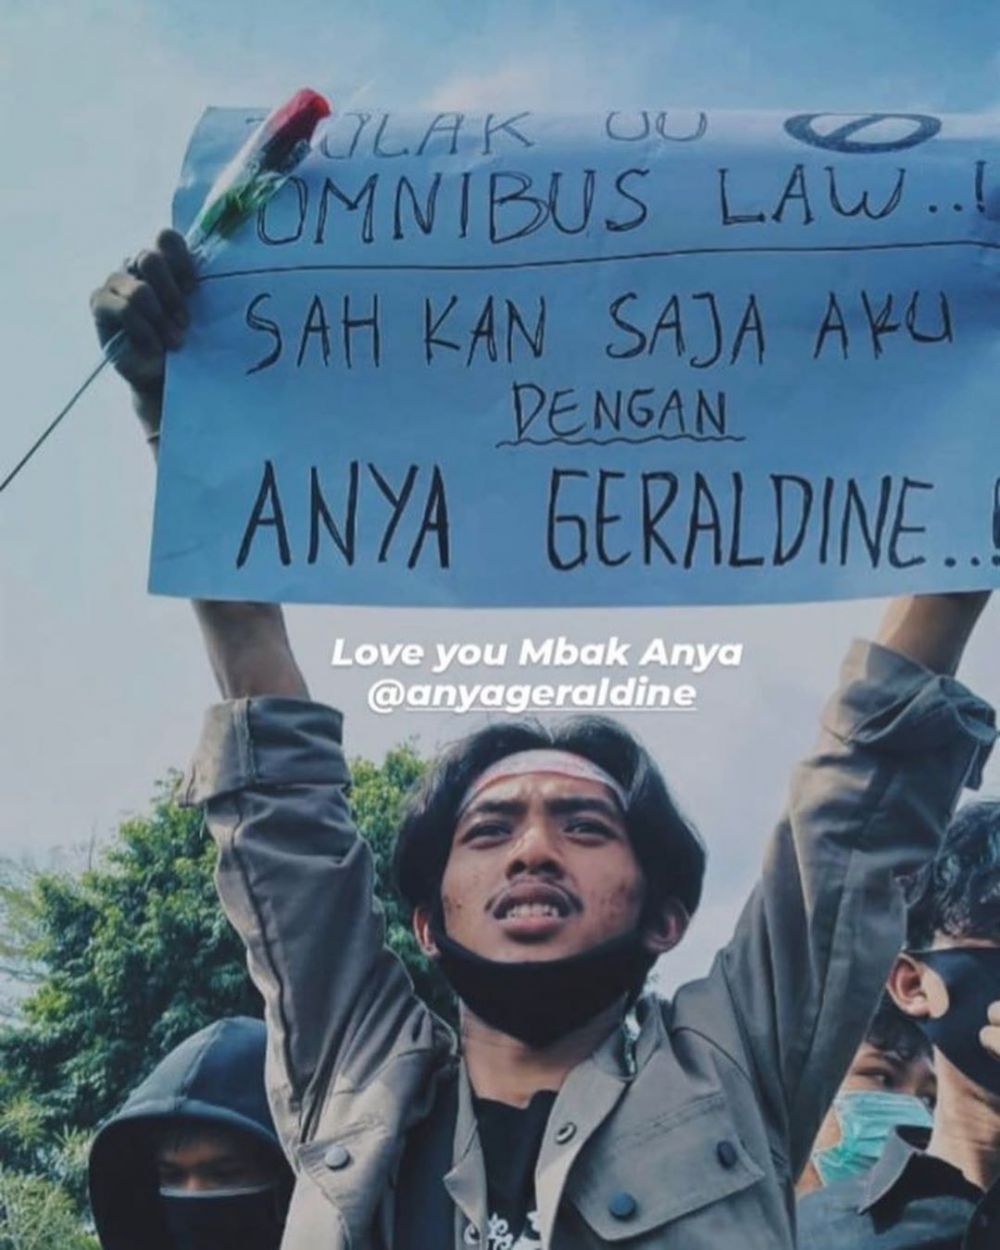 Namanya dipakai poster demo tolak Omnibus Law, ini kata Anya Geraldine